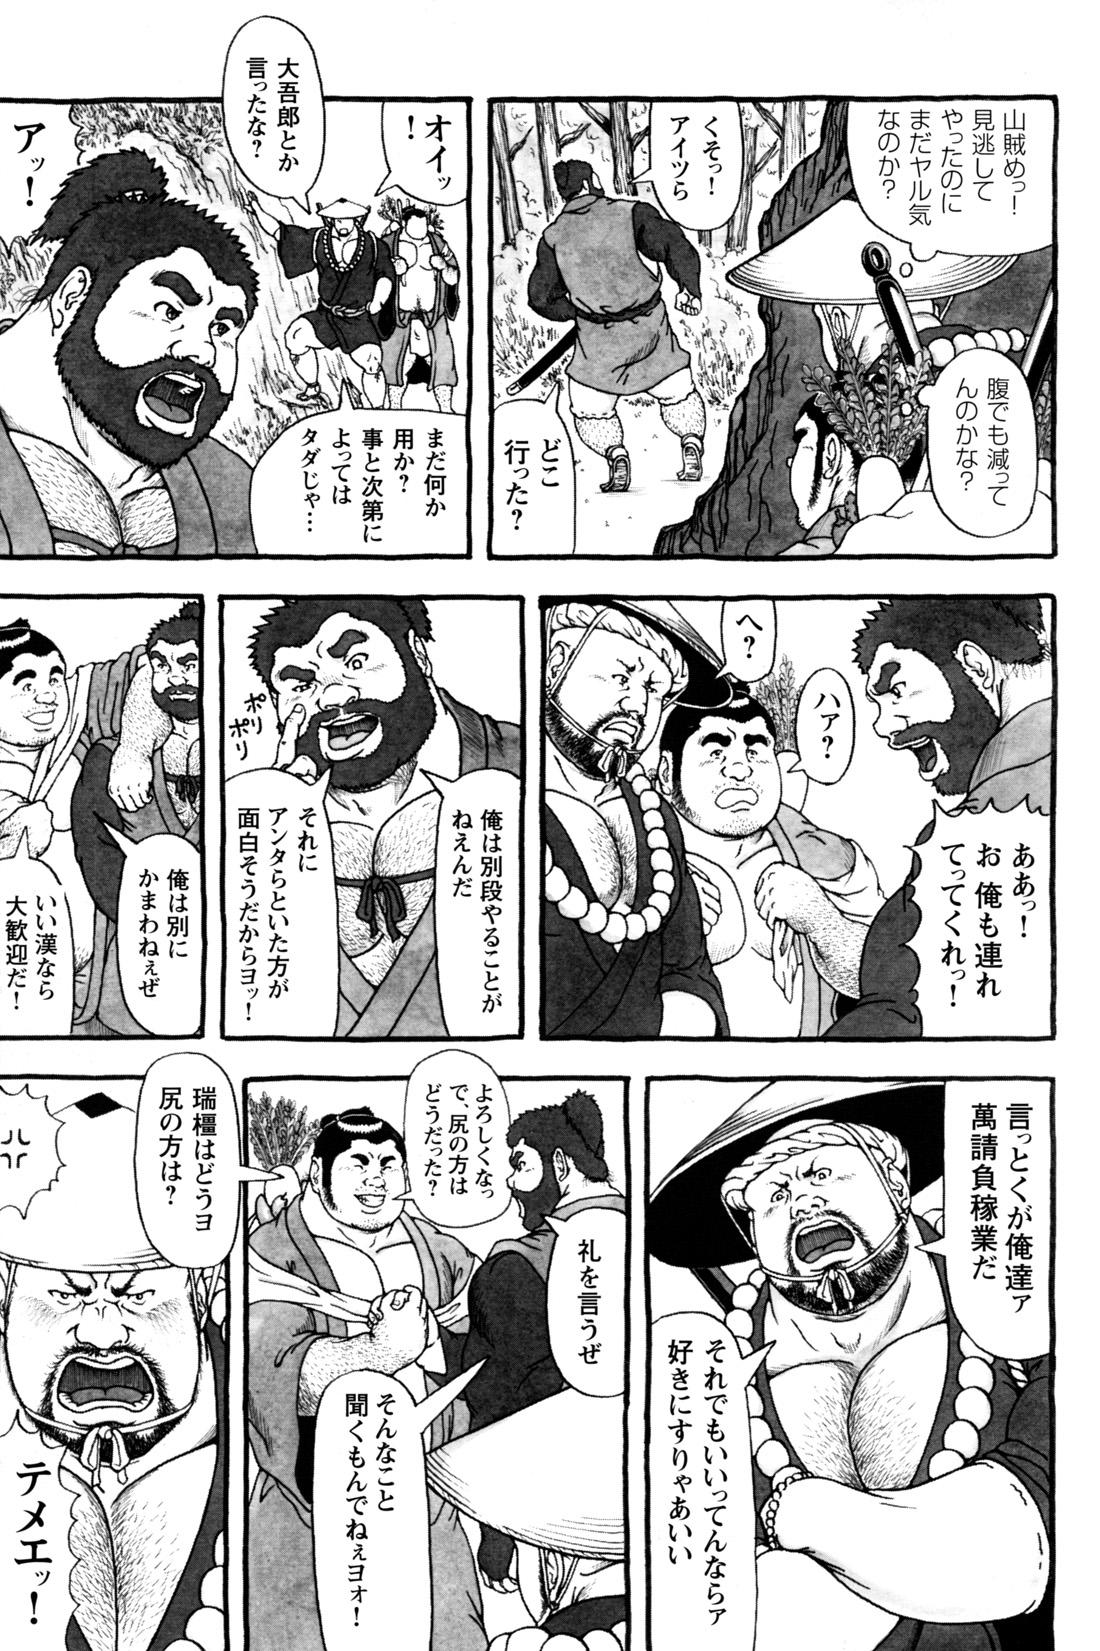 Comic G-men Gaho No.12 Aibou 100